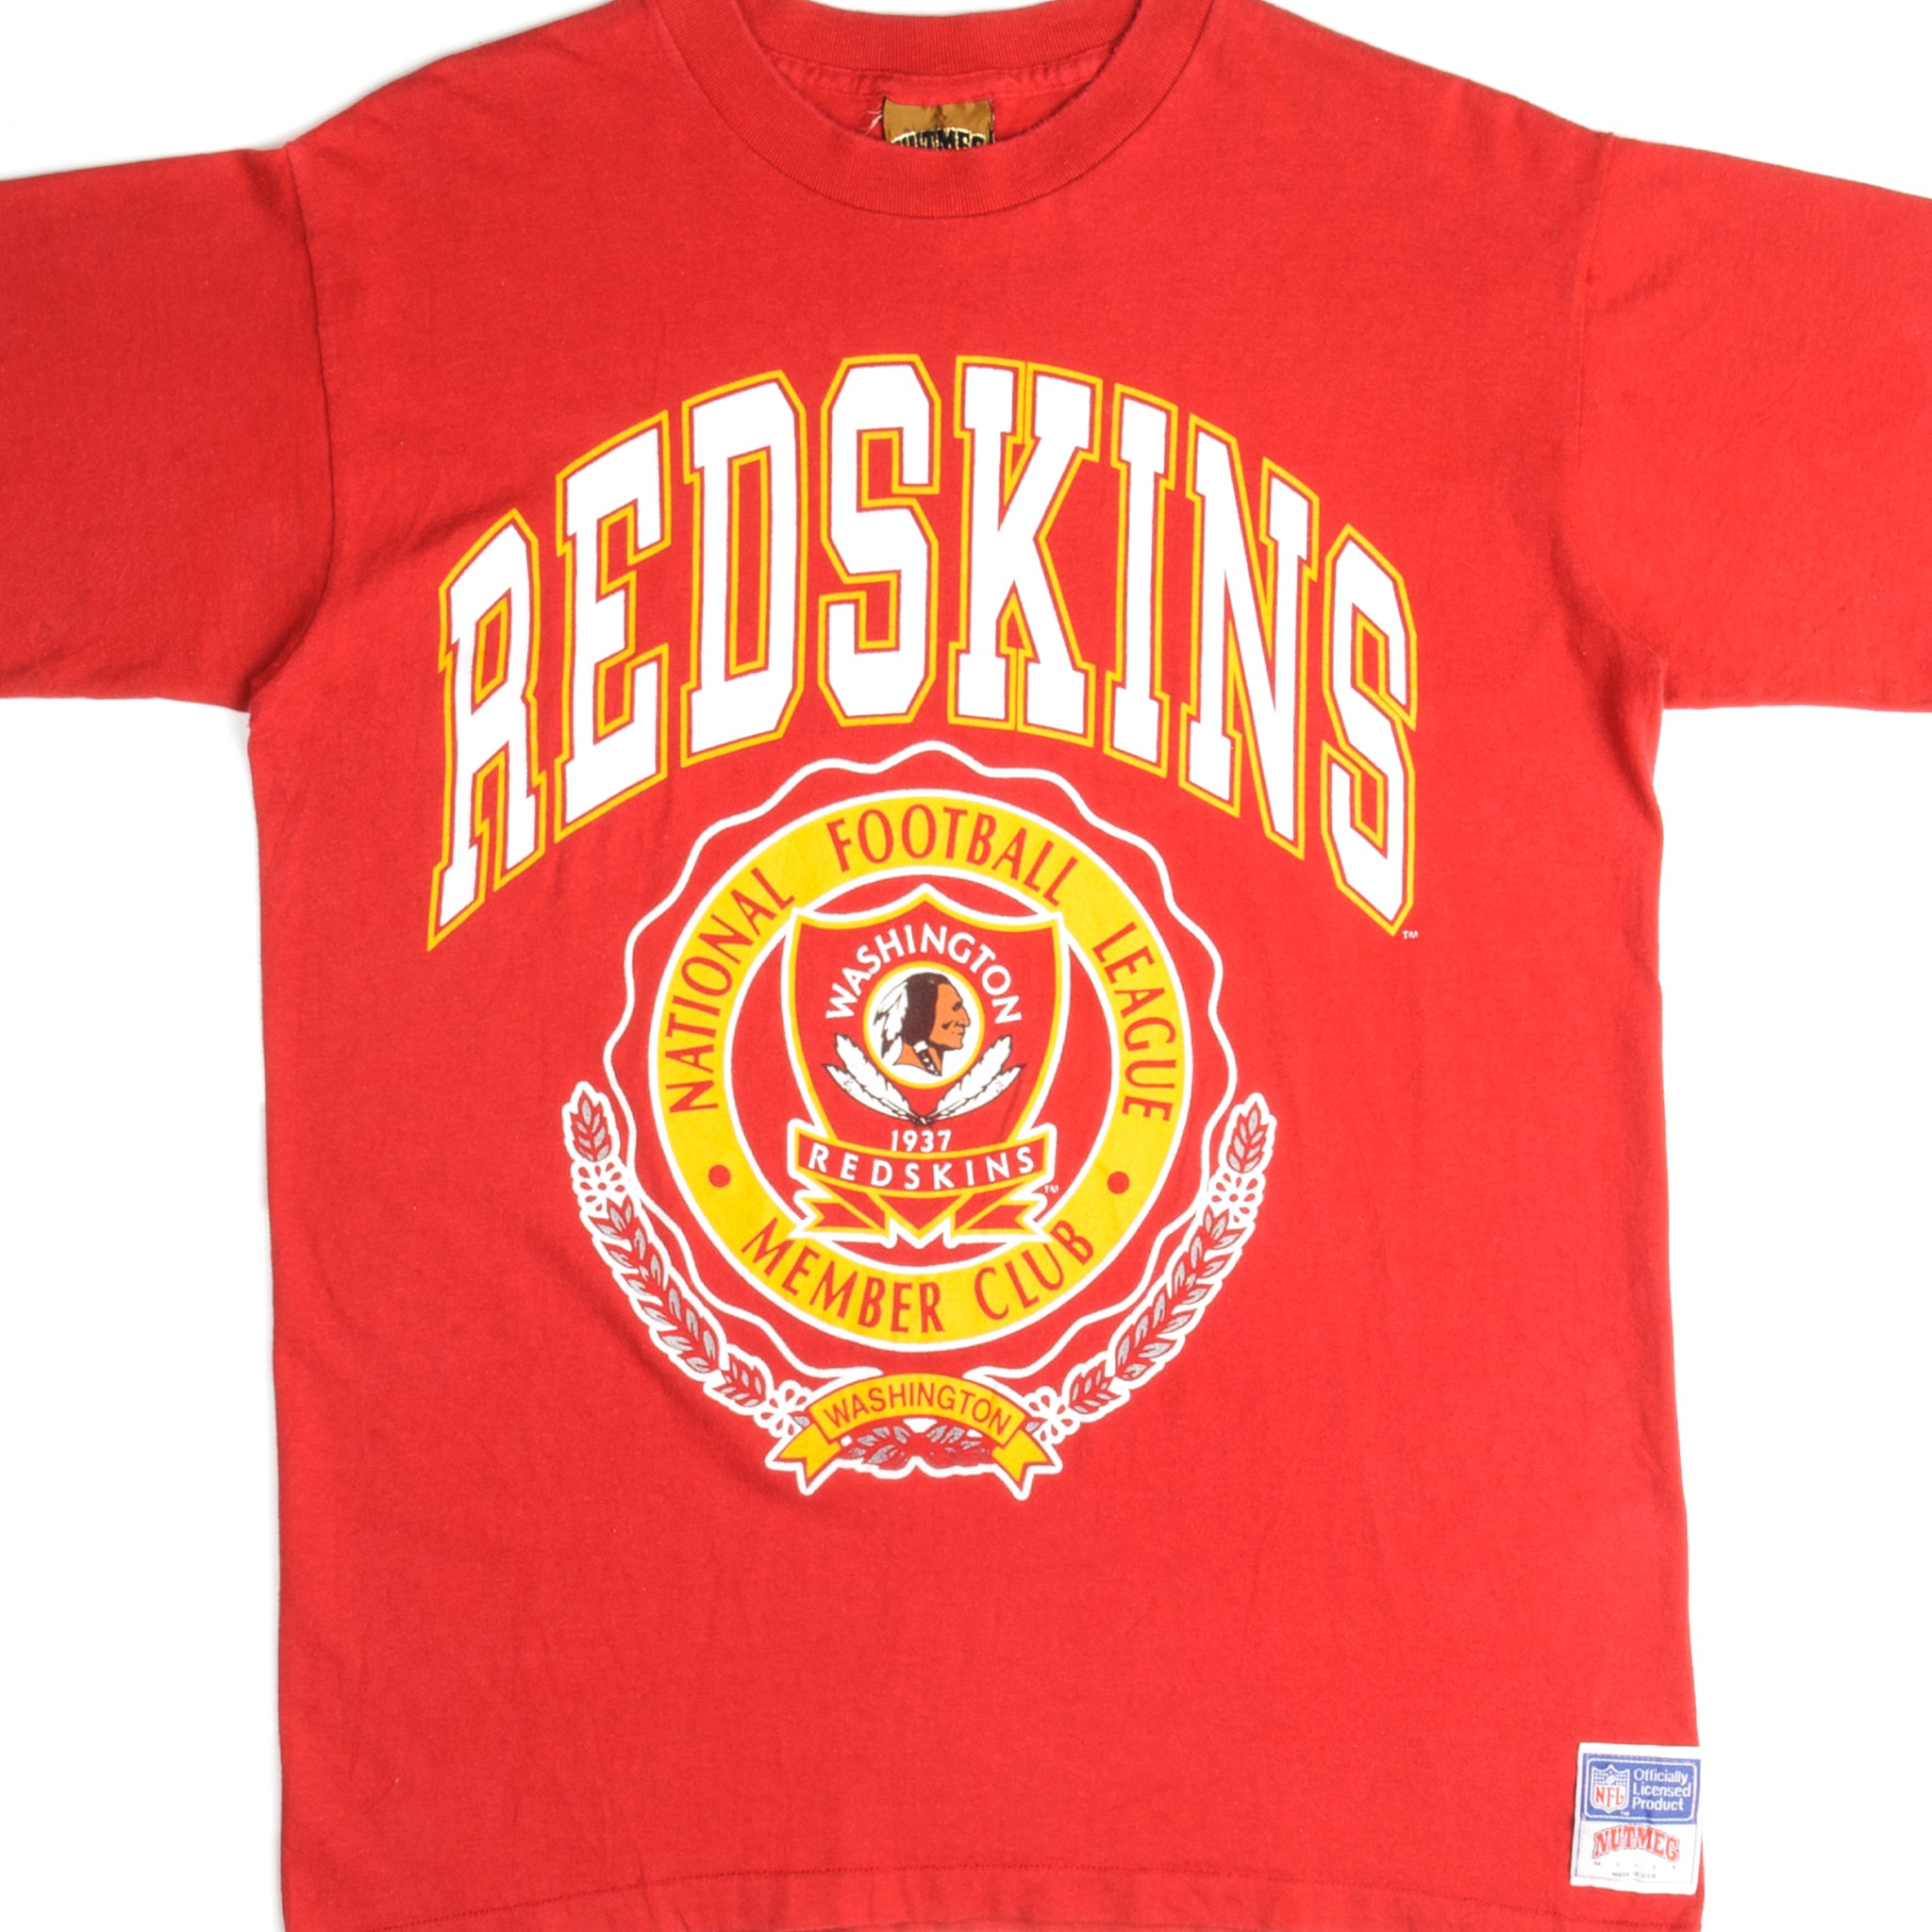 vintage redskins t shirt